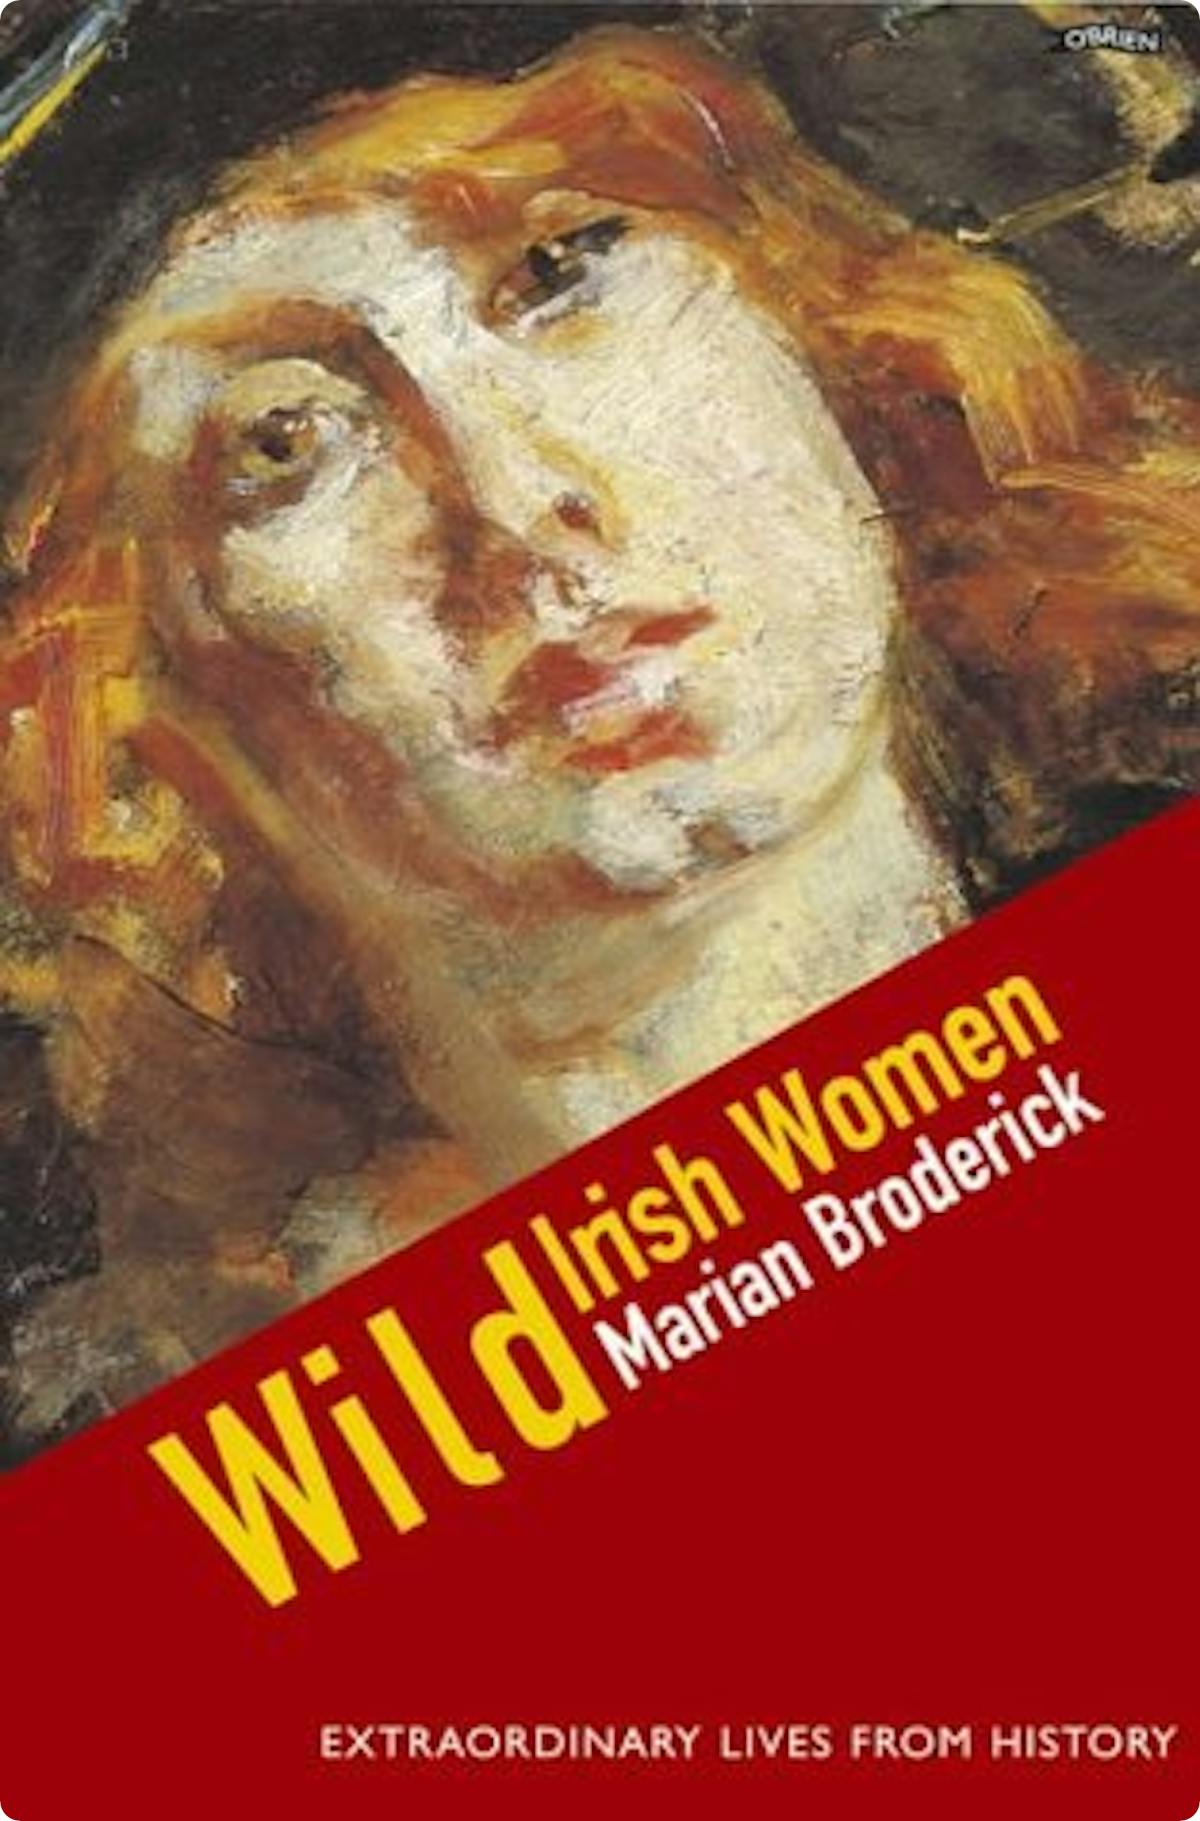 Wild Irish Women by Marian Broderick